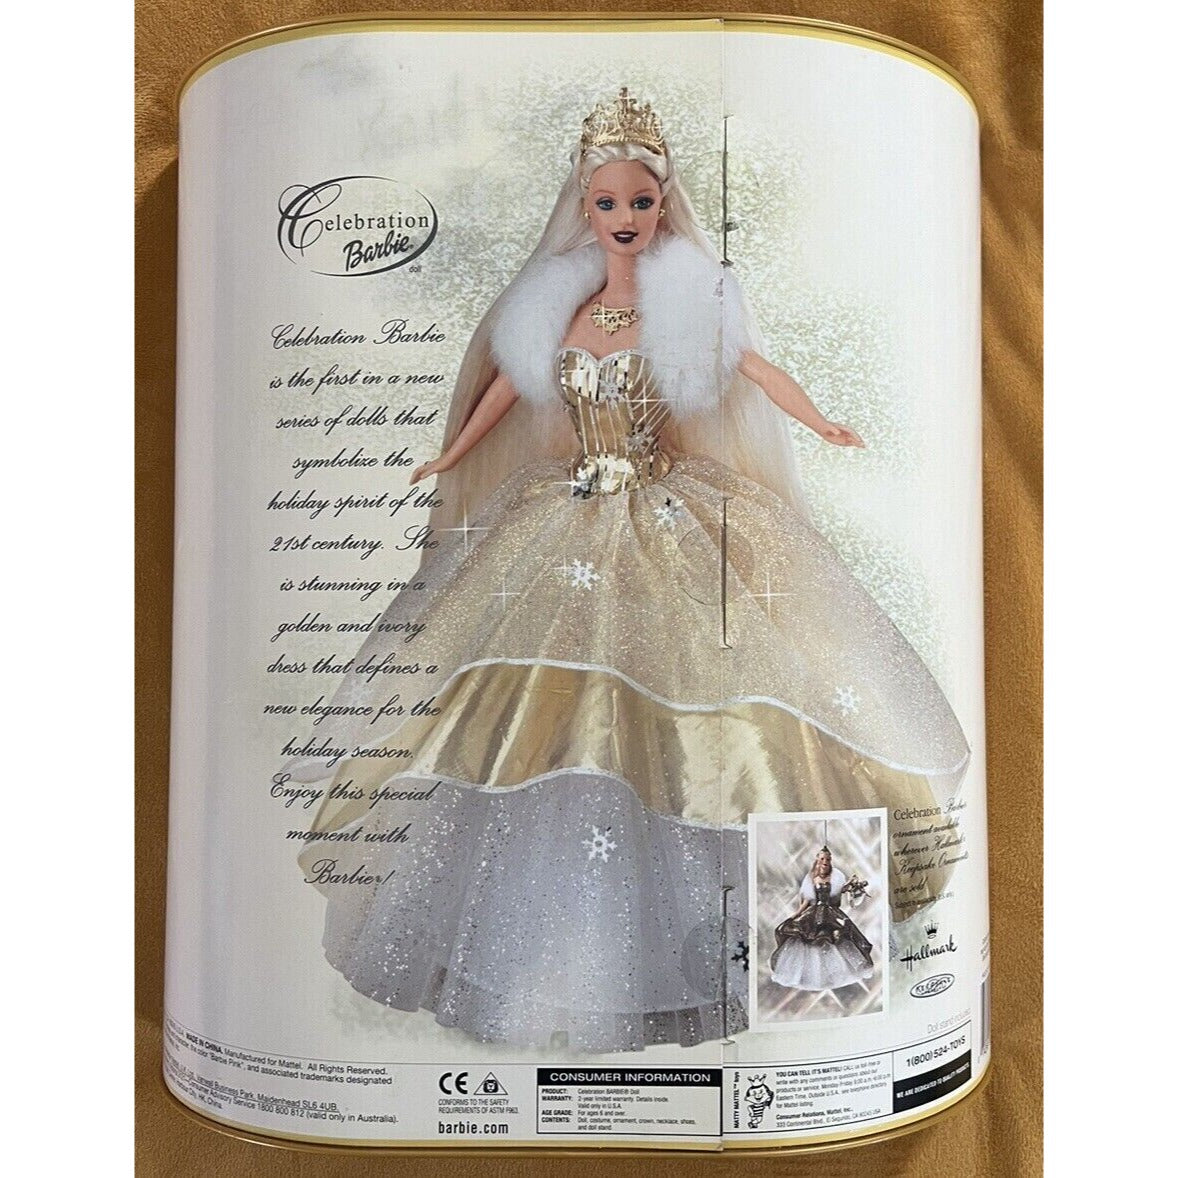 2000 Mattel Barbie Doll Blonde, "Celebration Of Y2K" Special Edition #28269 NRFB